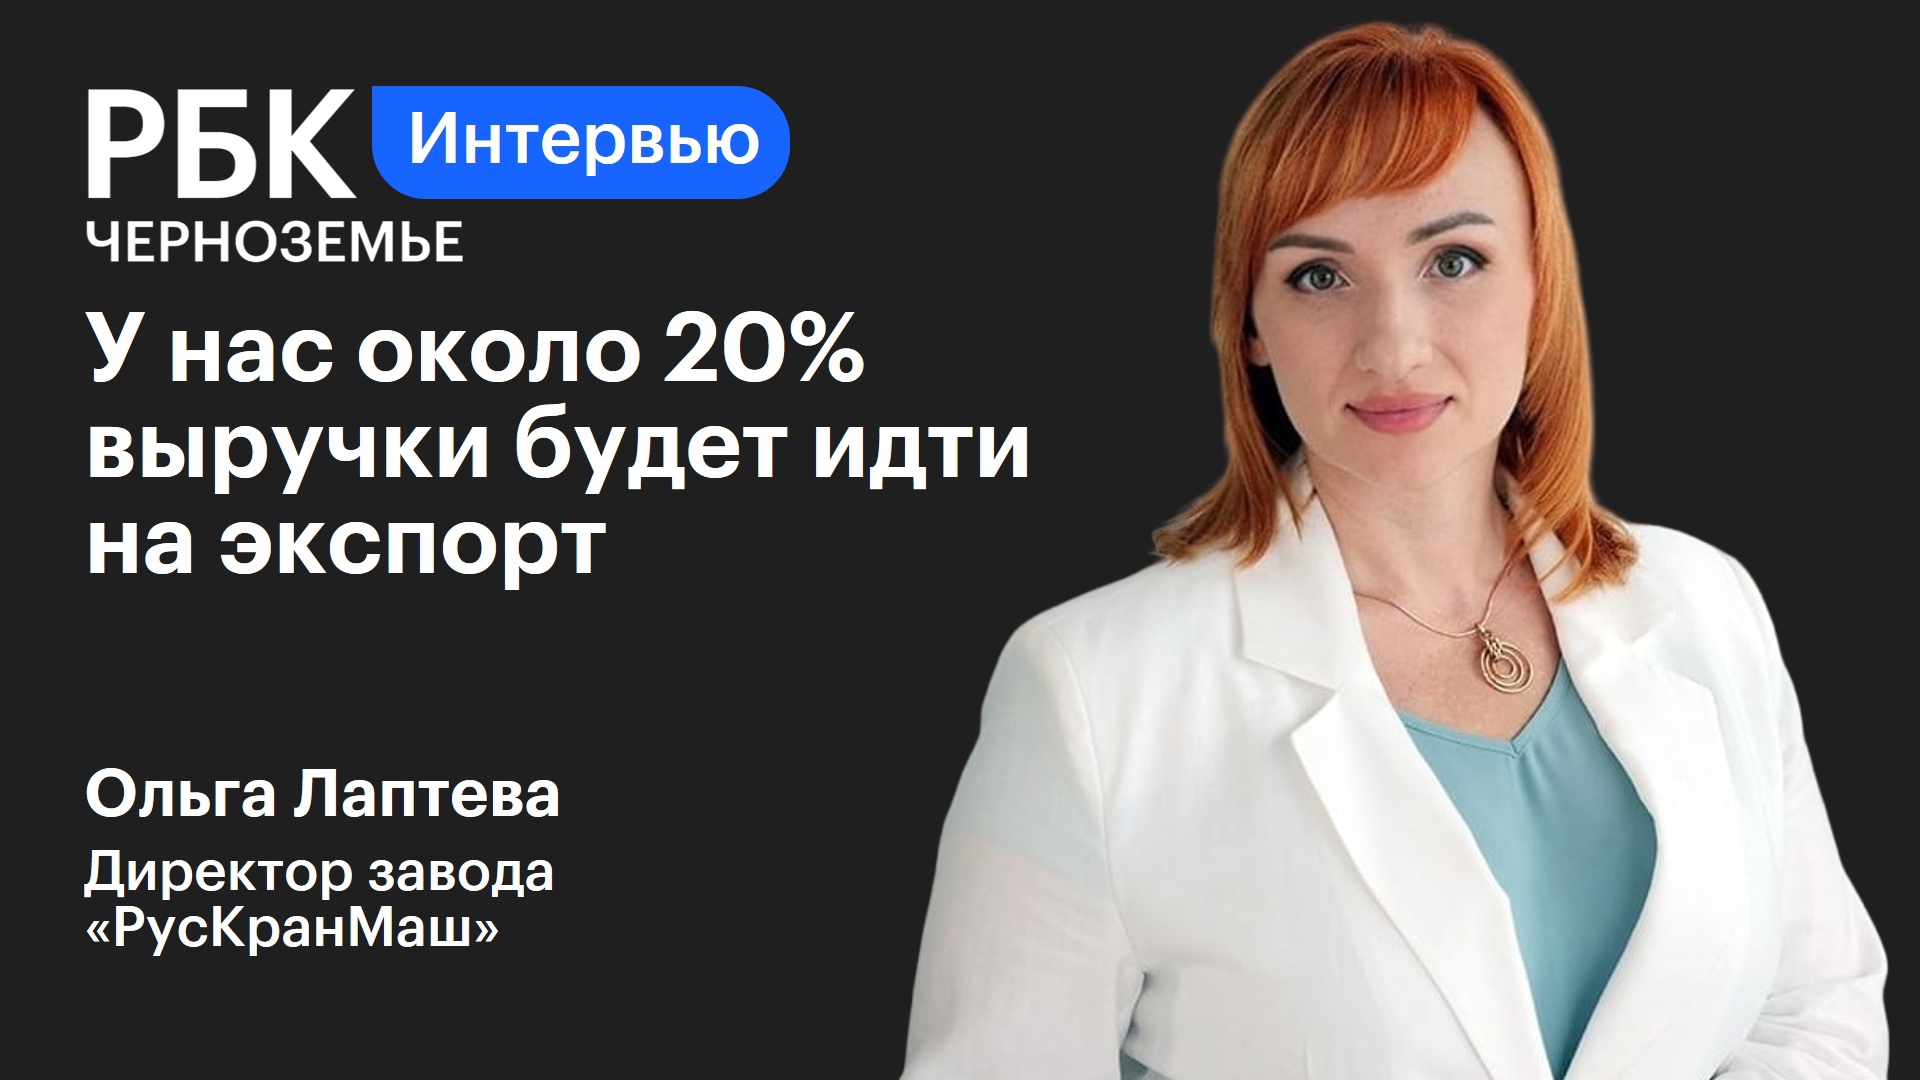 Ольга Лаптева: «У нас около 20% выручки будет идти на экспорт»